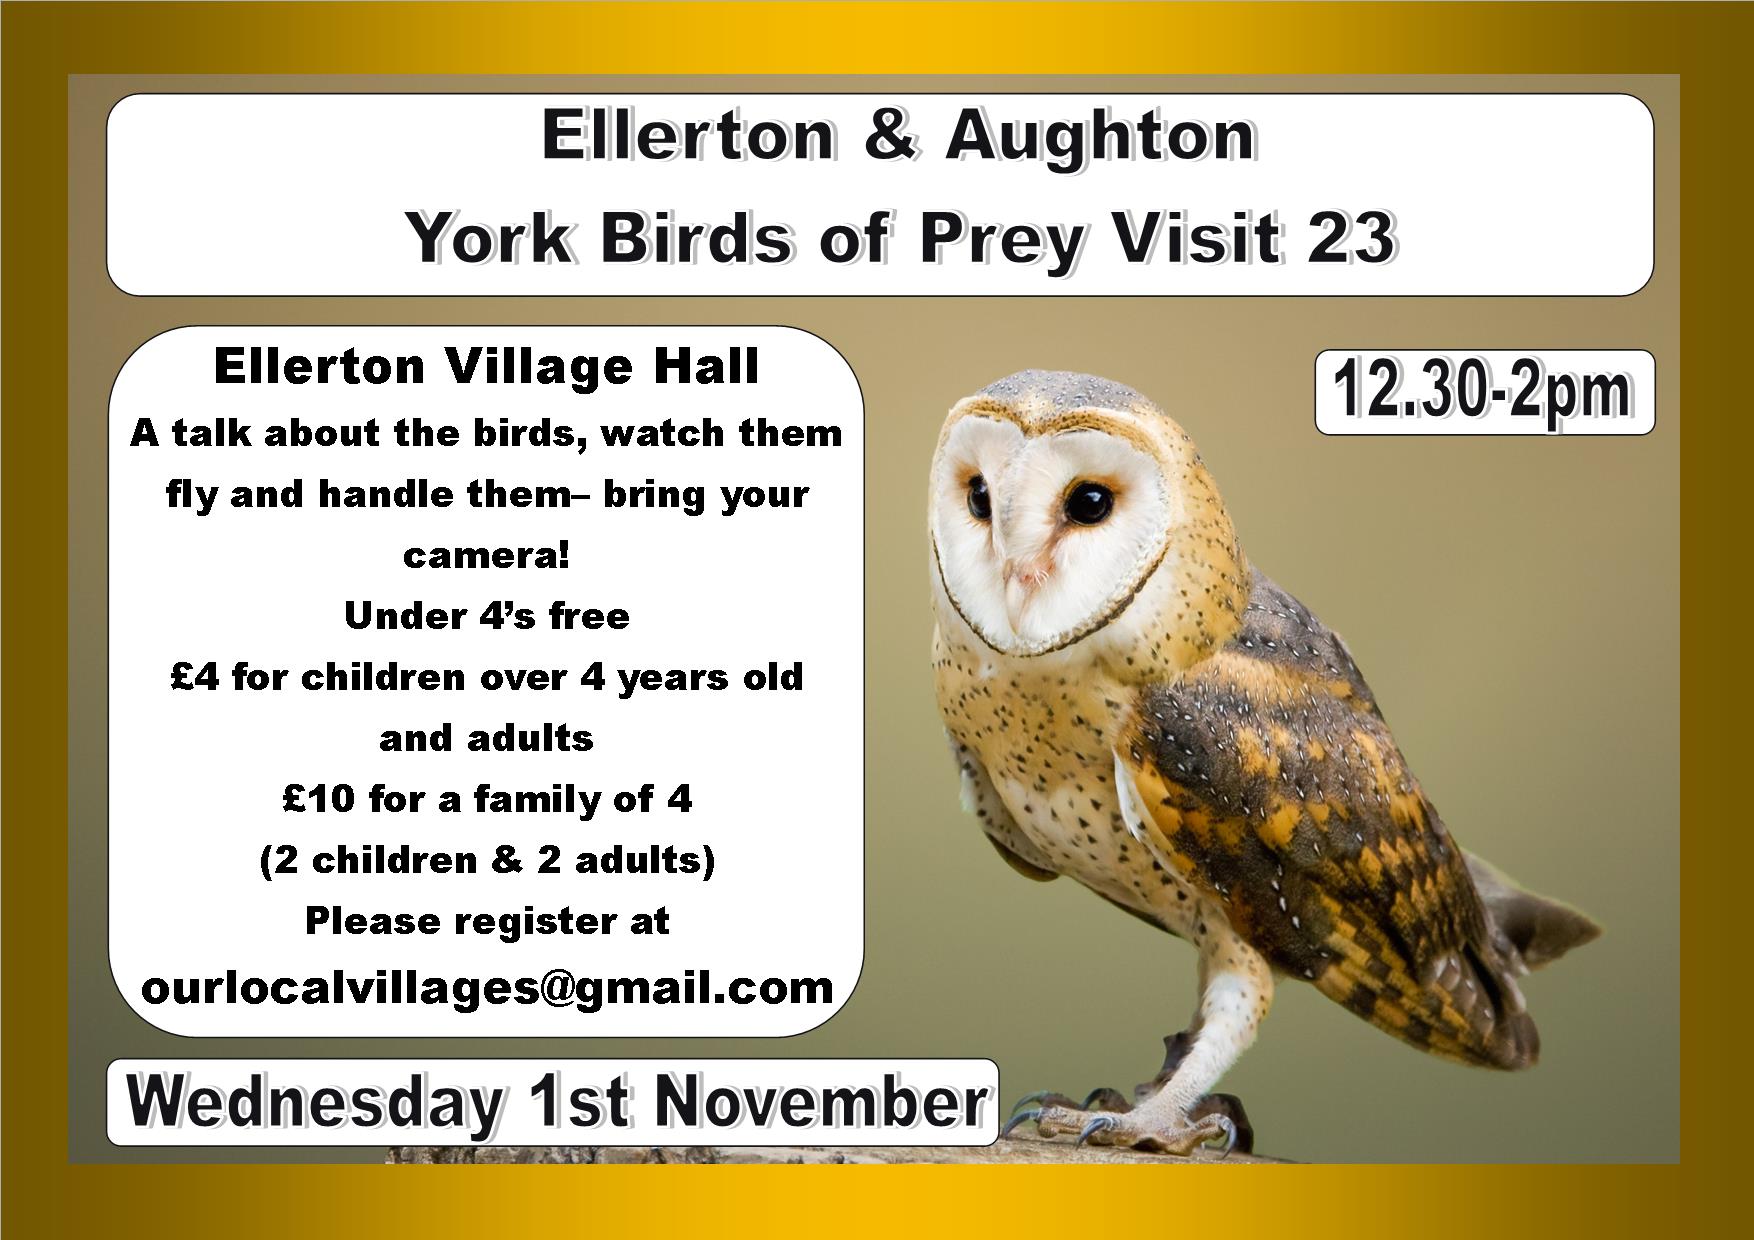 Ellerton & Aughton Community Village Hall 2023 Birds of Prey